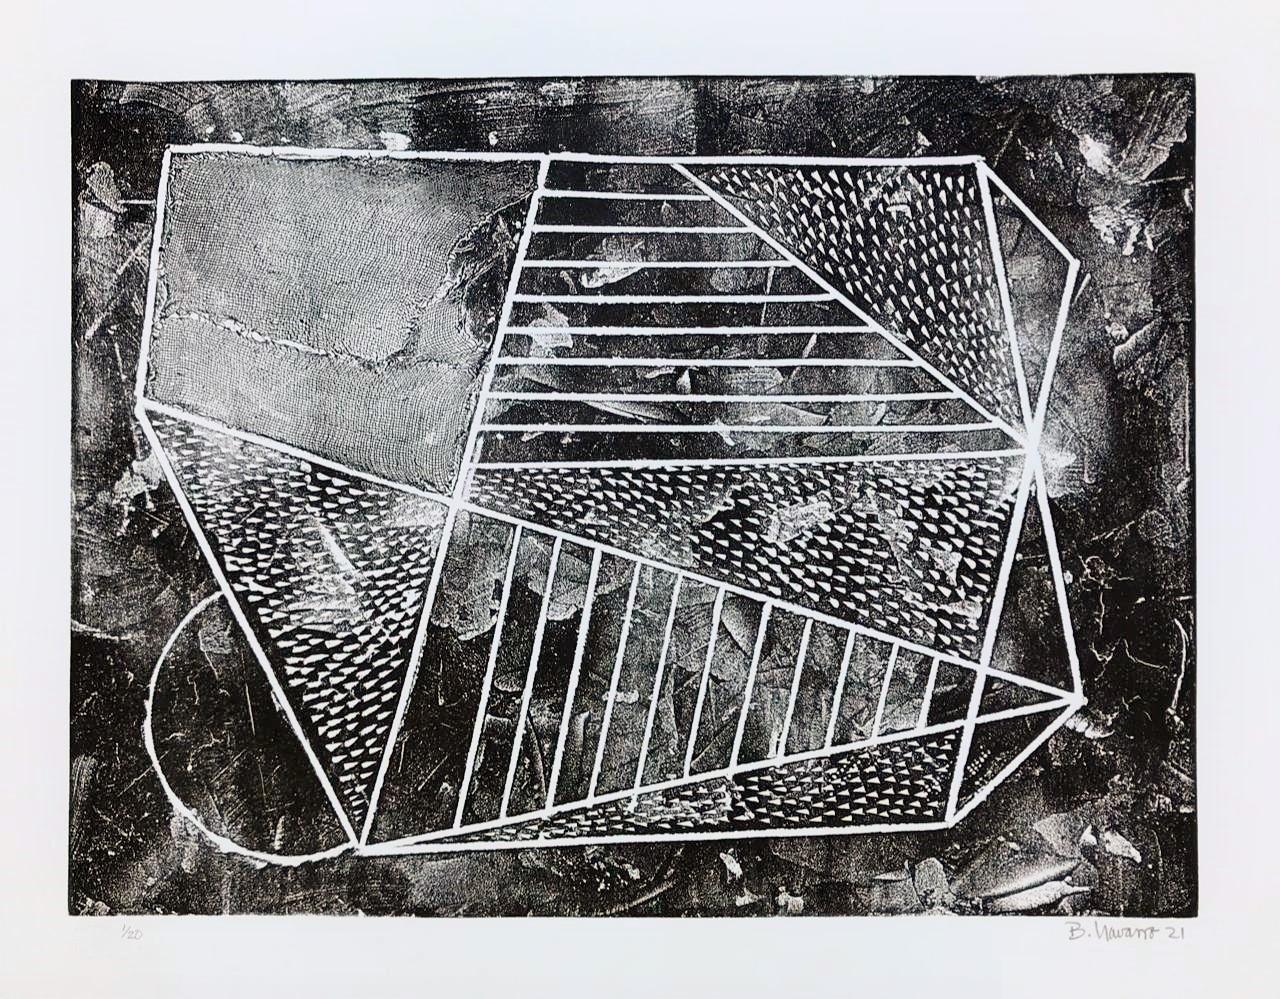 Bernardo Navarro Tomas (Cuba, 1977)
Sans titre (B/N horizontal)", 2021
collagraphie sur papier Guarro Biblos 250g.
21.1 x 27.2 in. (53.5 x 69 cm.)
Edition de 20
ID : NAA-111
Non encadré